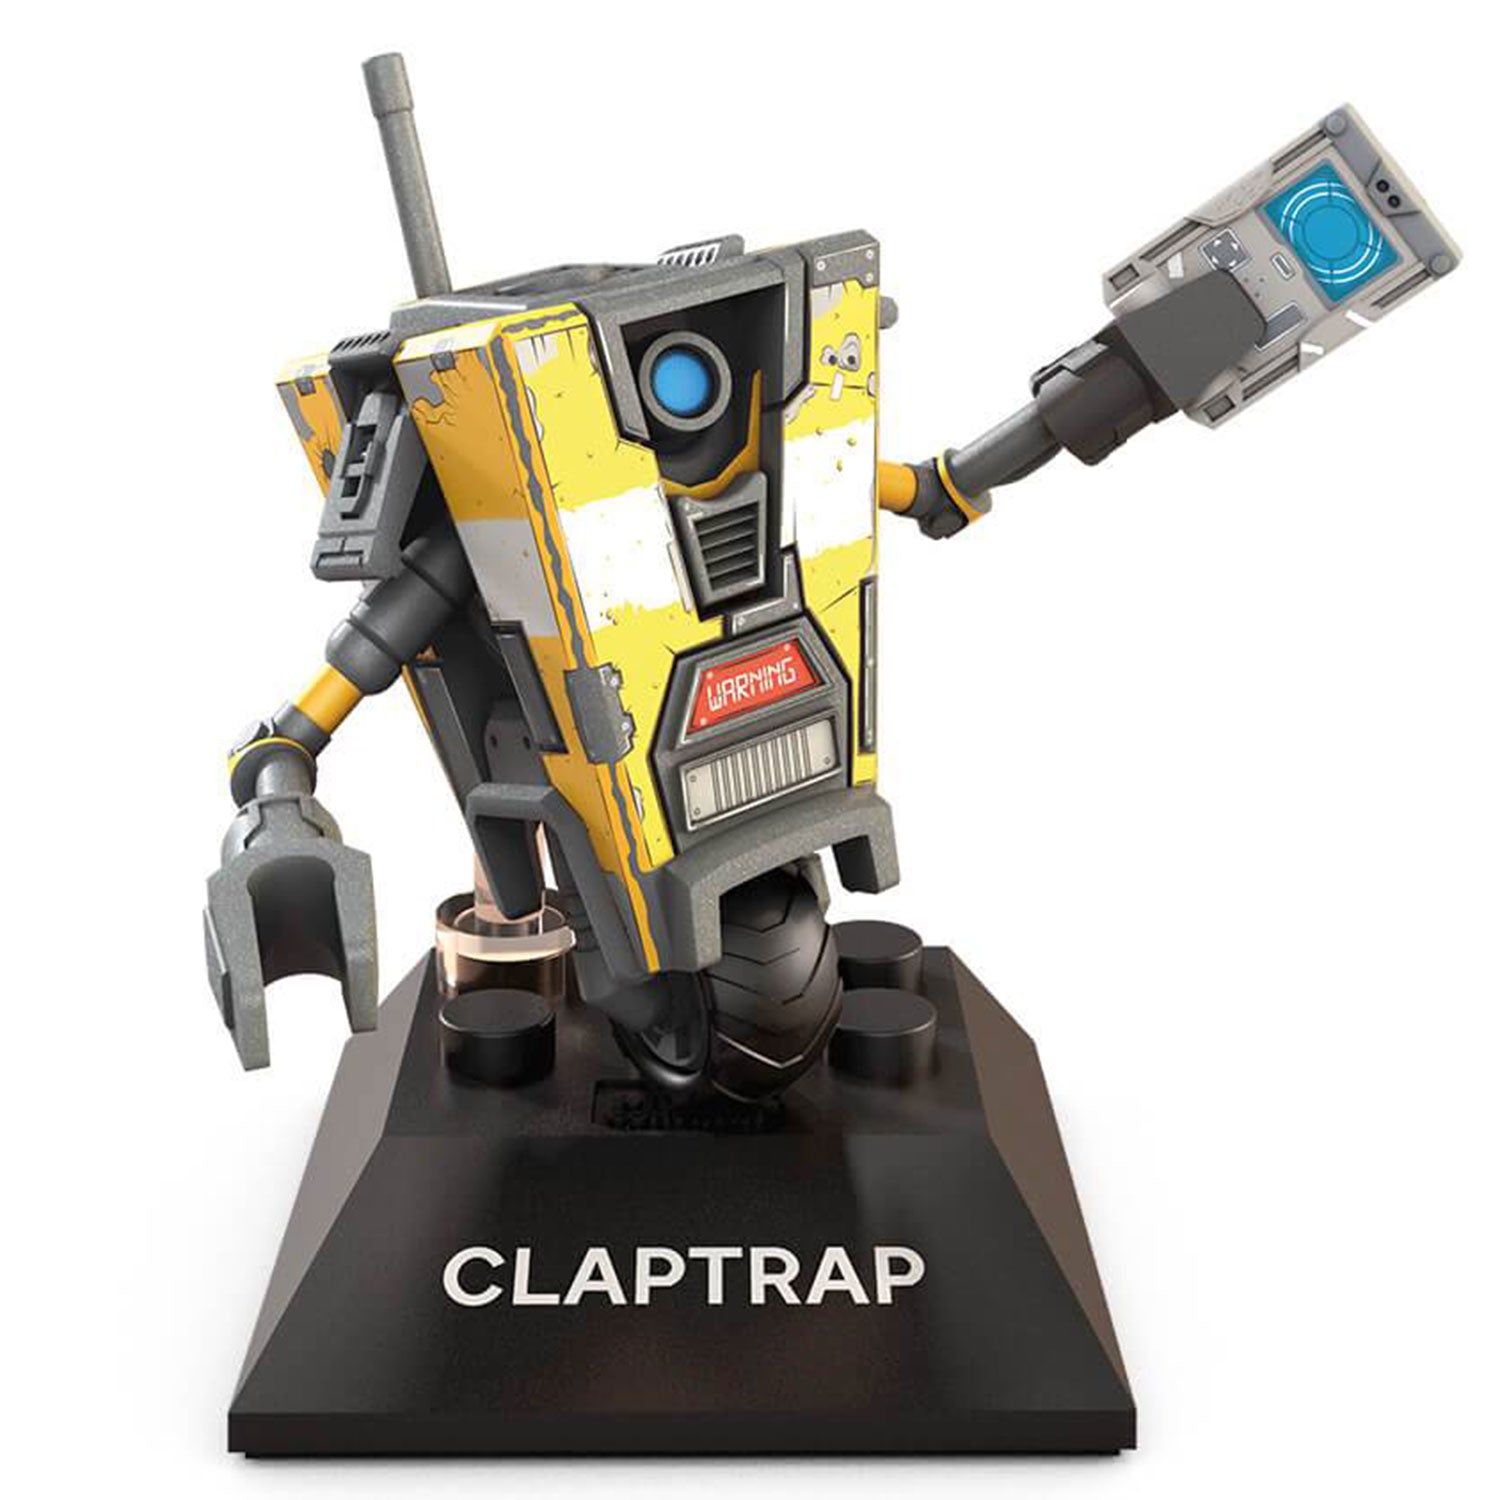 Claptrap - Mega Construx Borderlands 3 Black Series Figure Pack